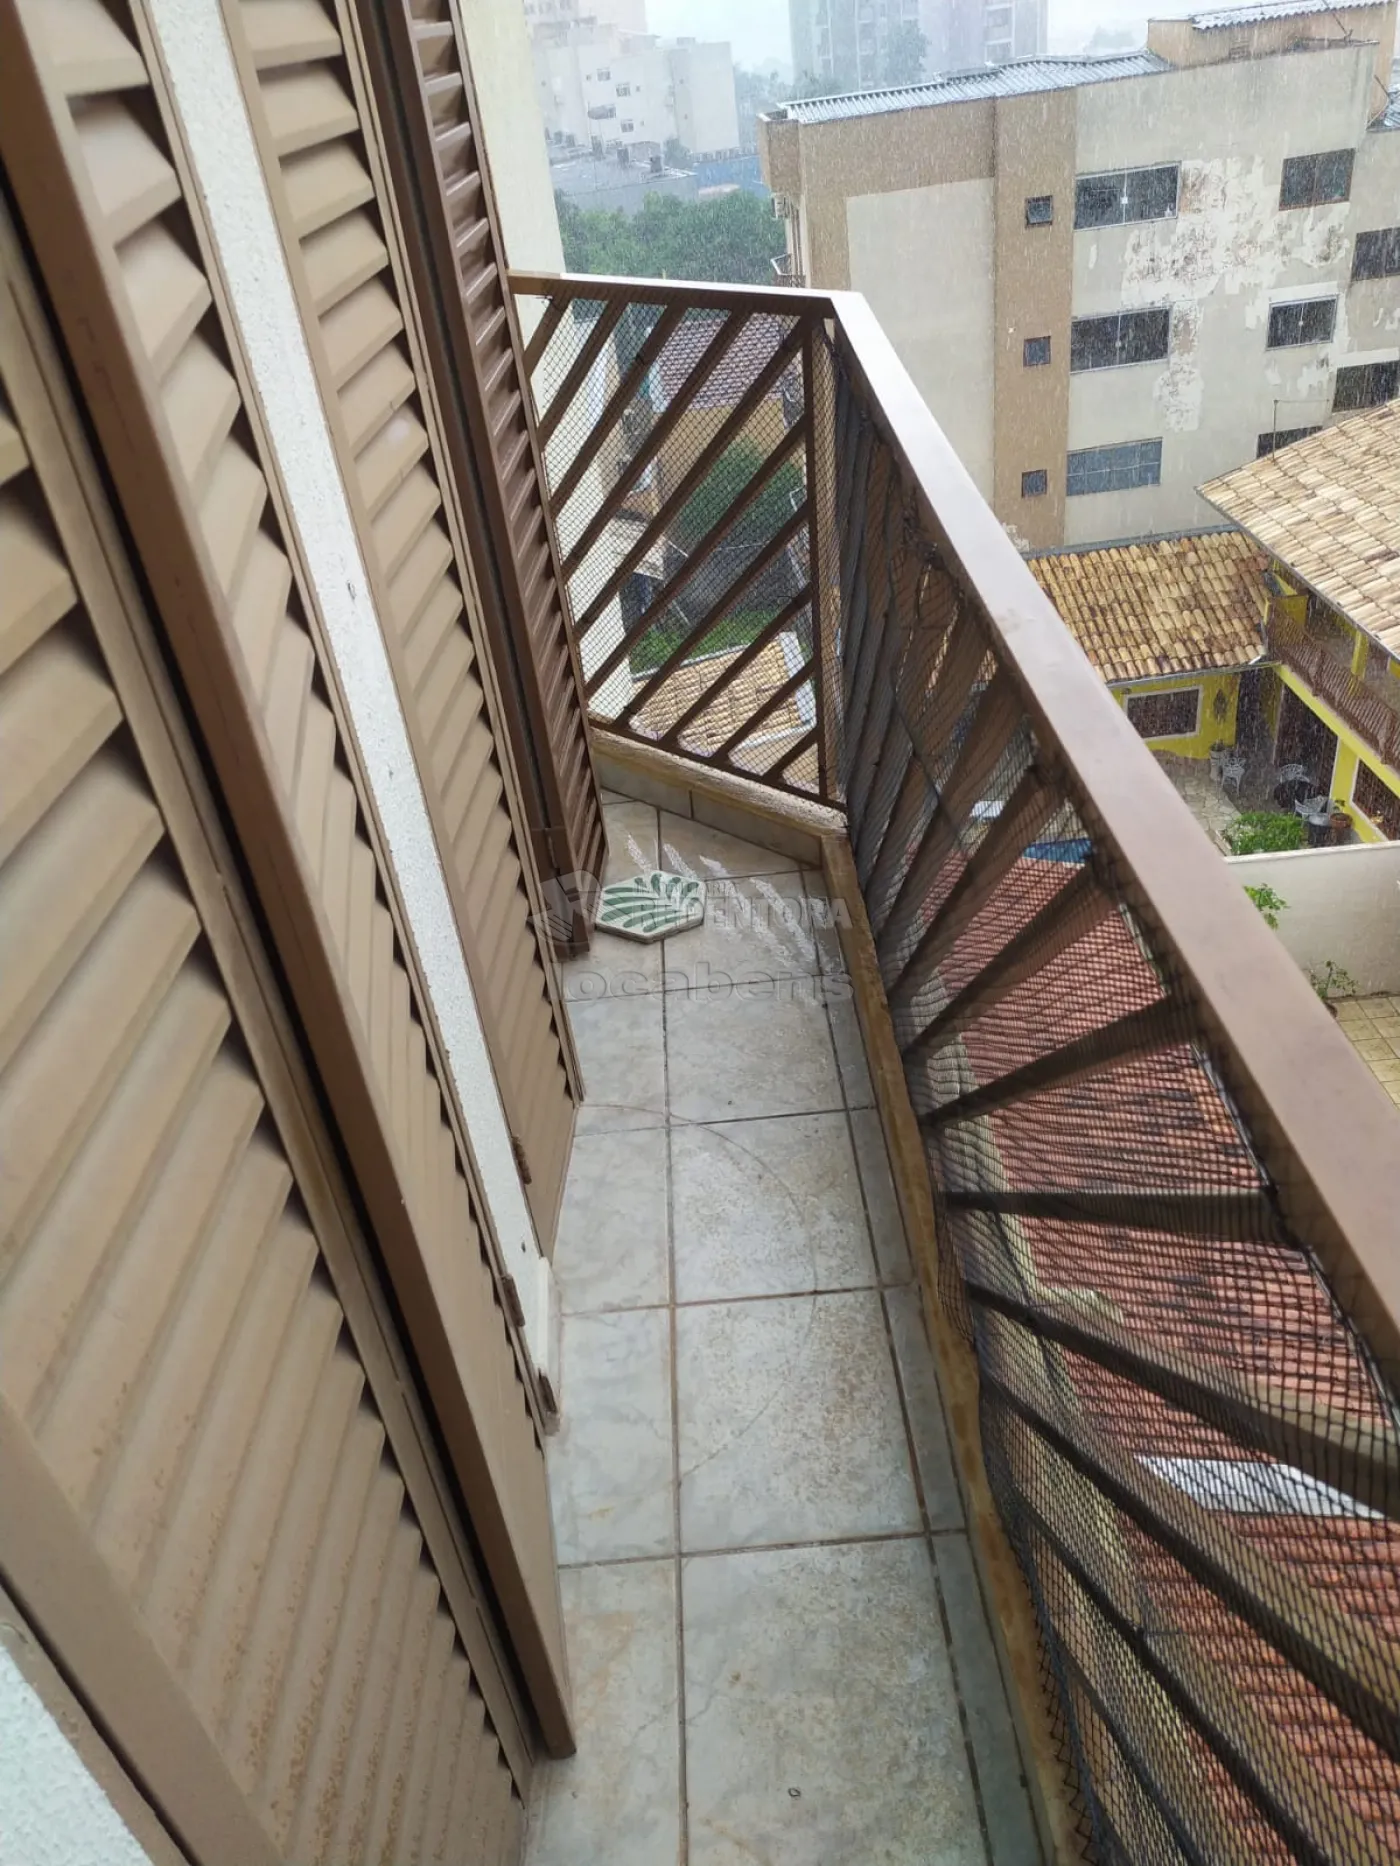 Comprar Apartamento / Padrão em São José do Rio Preto R$ 240.000,00 - Foto 7